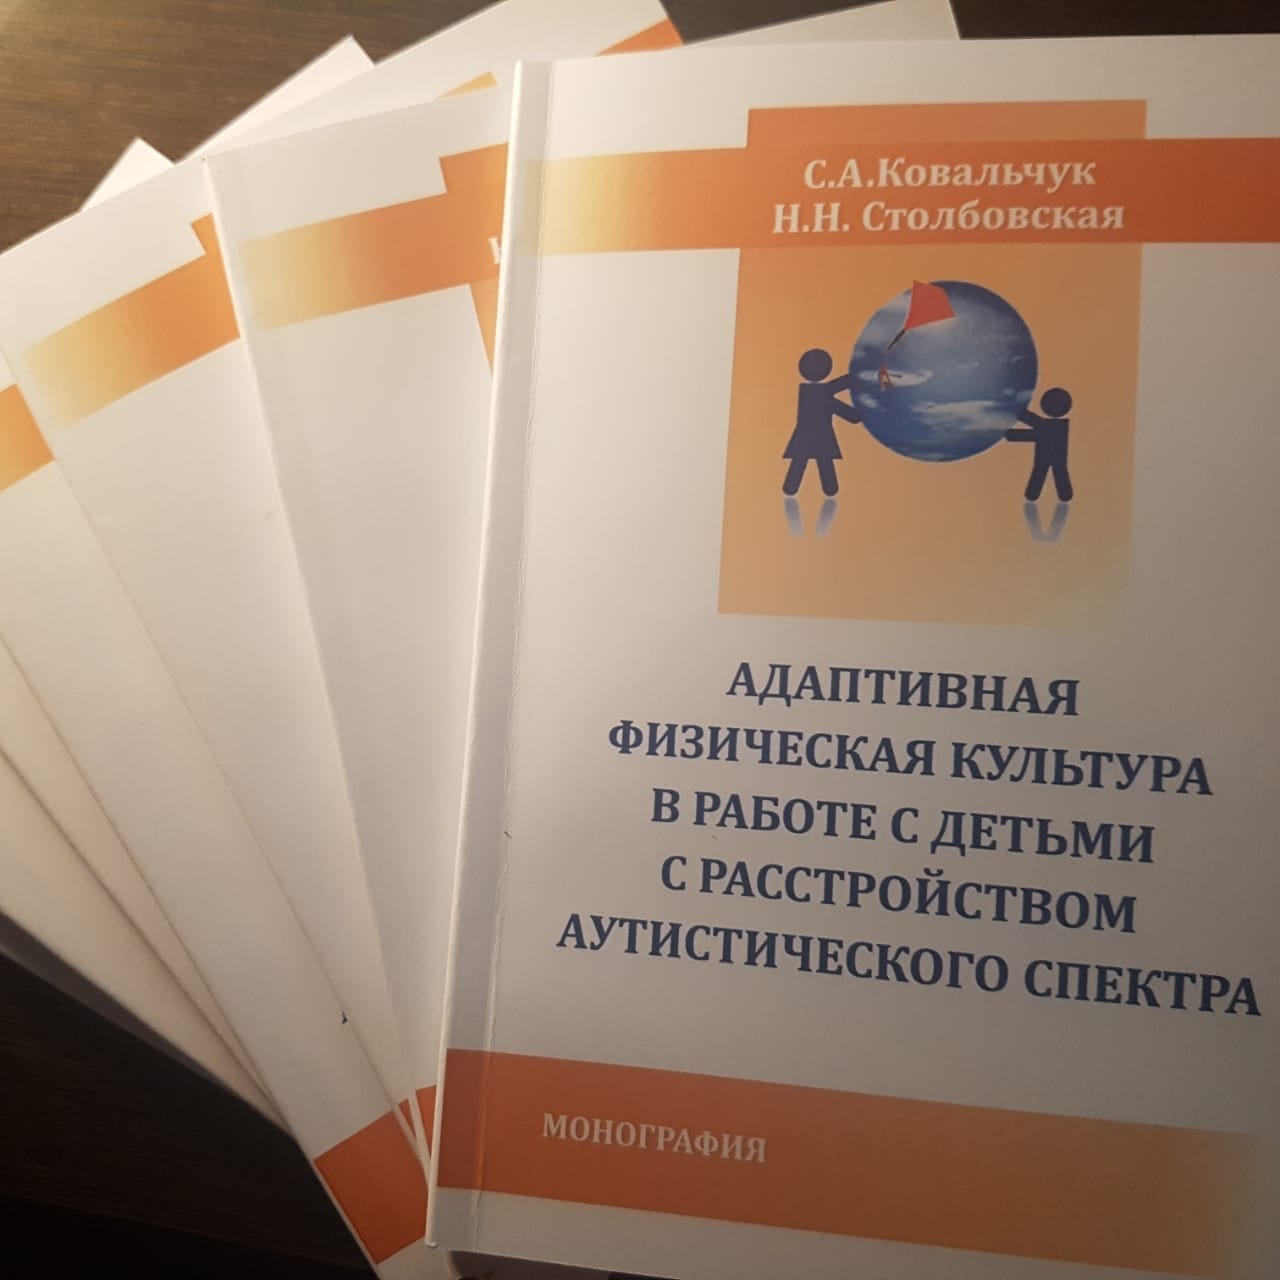 Вышла в свет первая книга Светланы  Ковальчук "Адаптивная физкультура в работе с детьми с РАС"